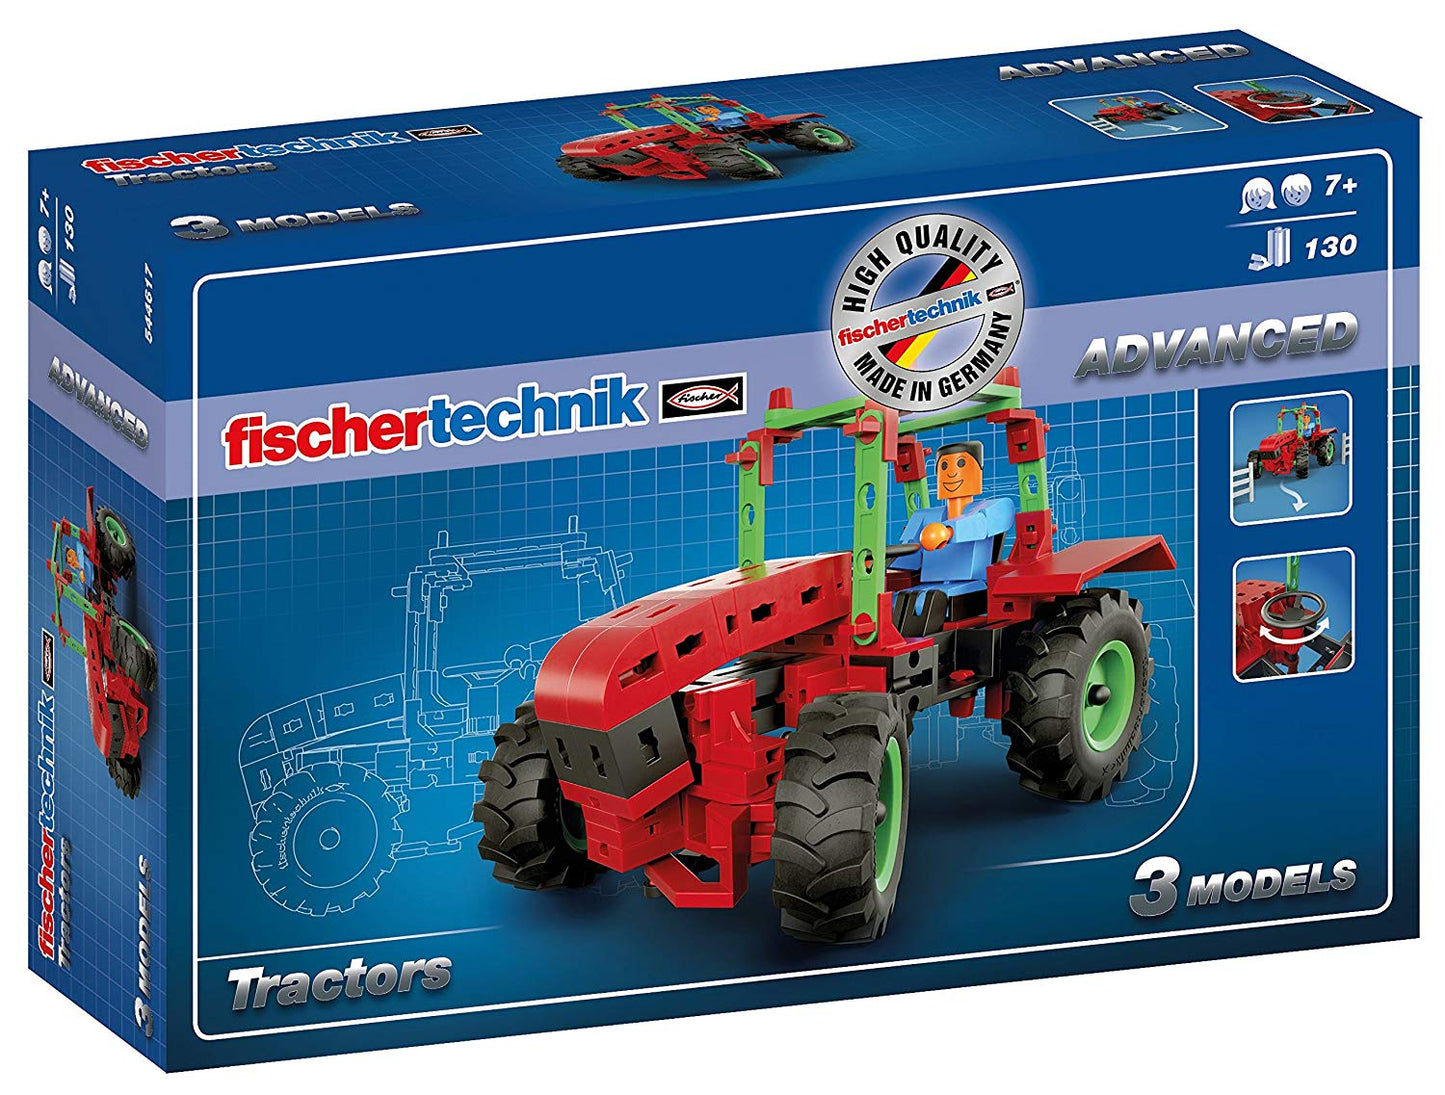 fischertechnik Advanced Tractors Construction Set